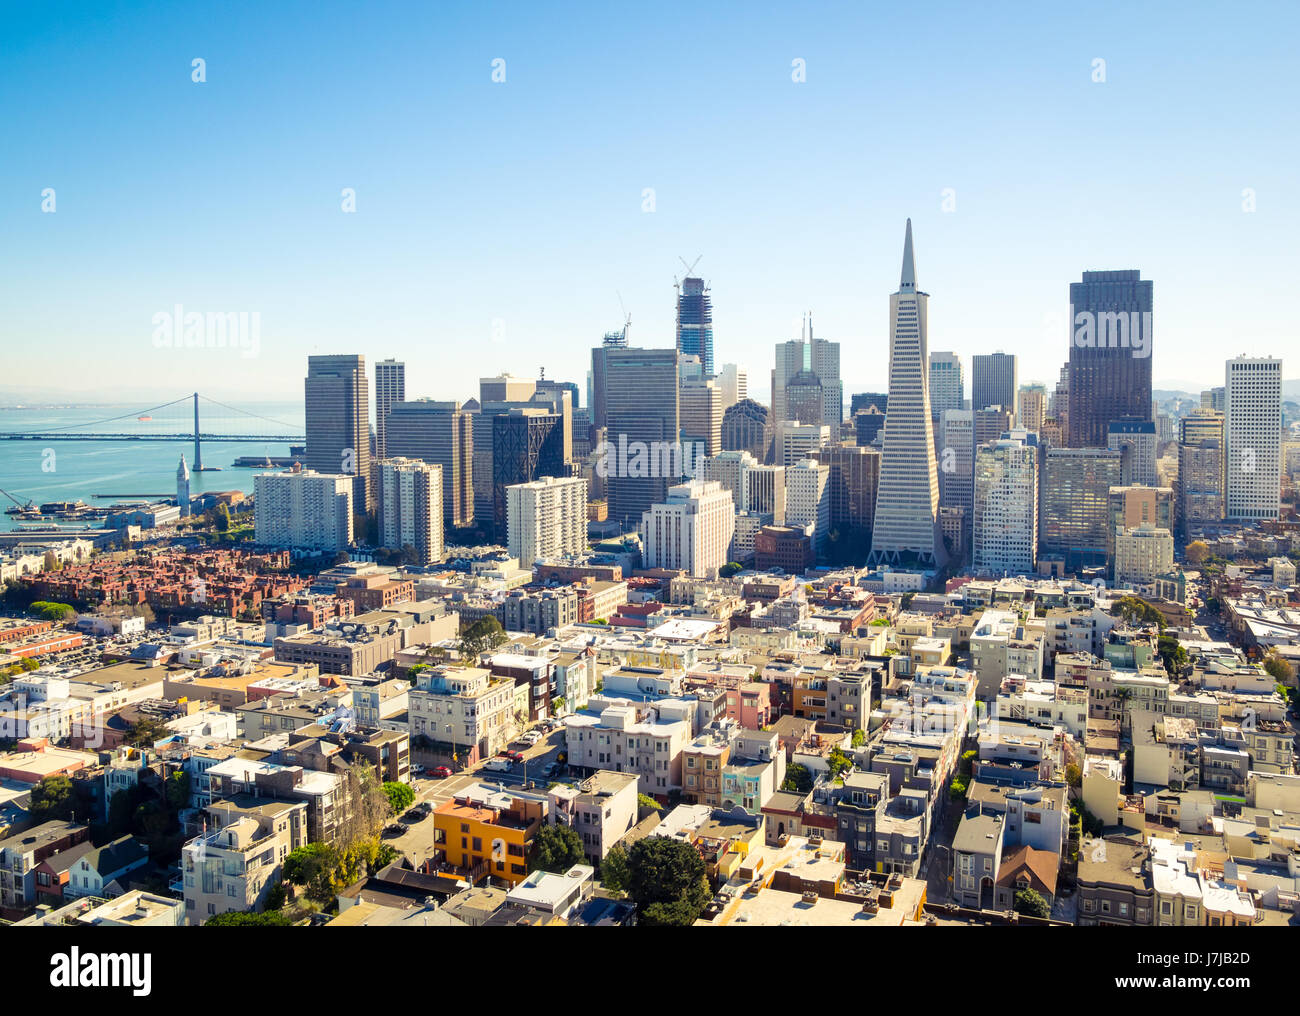 La sensacional horizonte del centro de la ciudad de San Francisco, California, visto desde la cima de la torre Coit en Telegraph Hill. Foto de stock